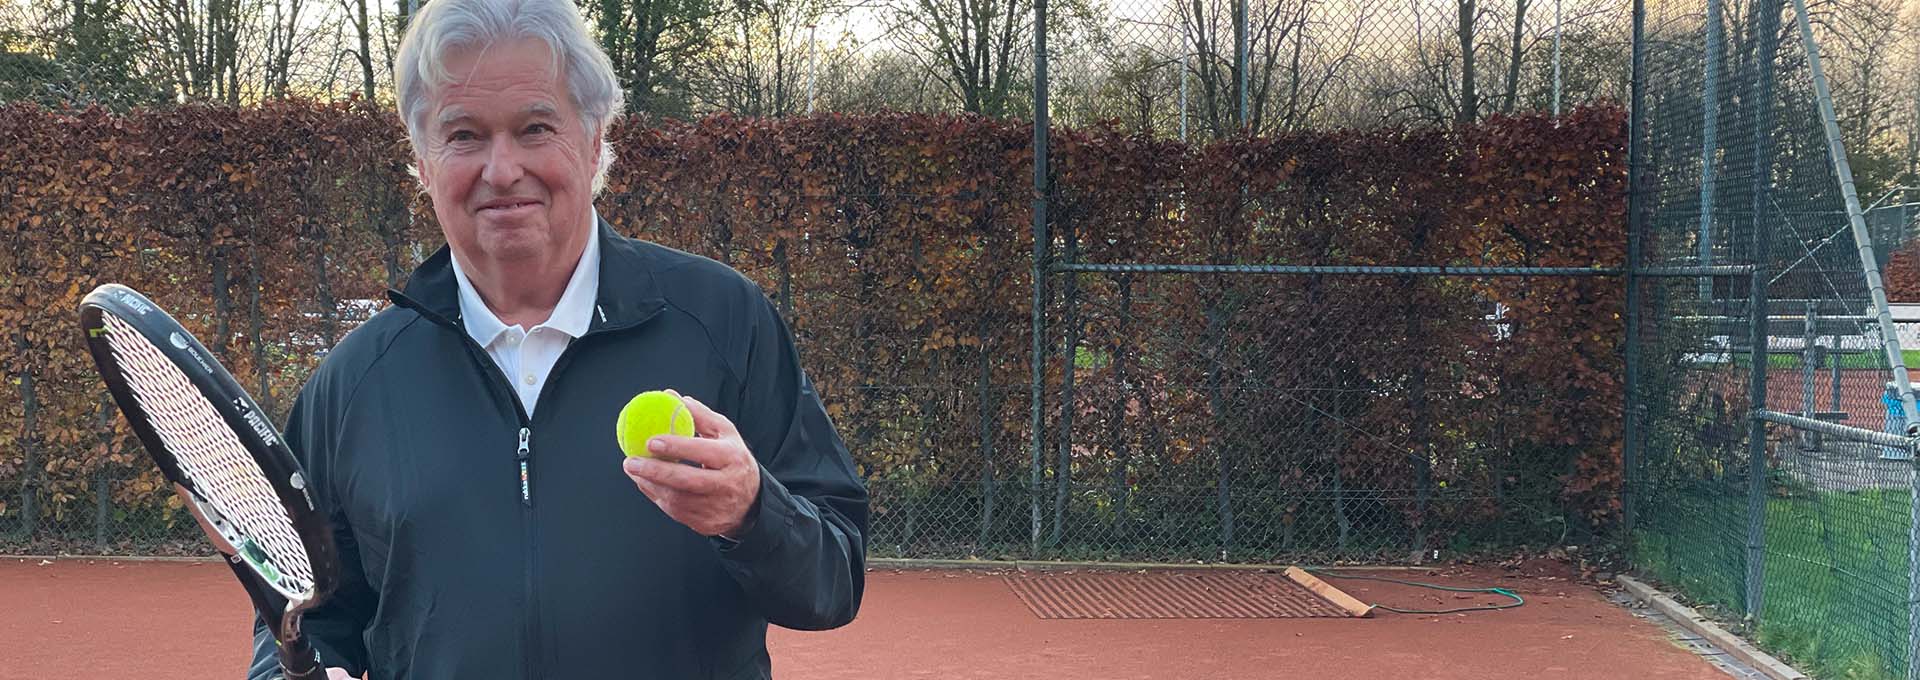 Bernafon Alpha -kuulokojeen käyttäjä (mies) tennispallo ja maila kädessä kentällä katselee kameraan valmiina pelaamaan.